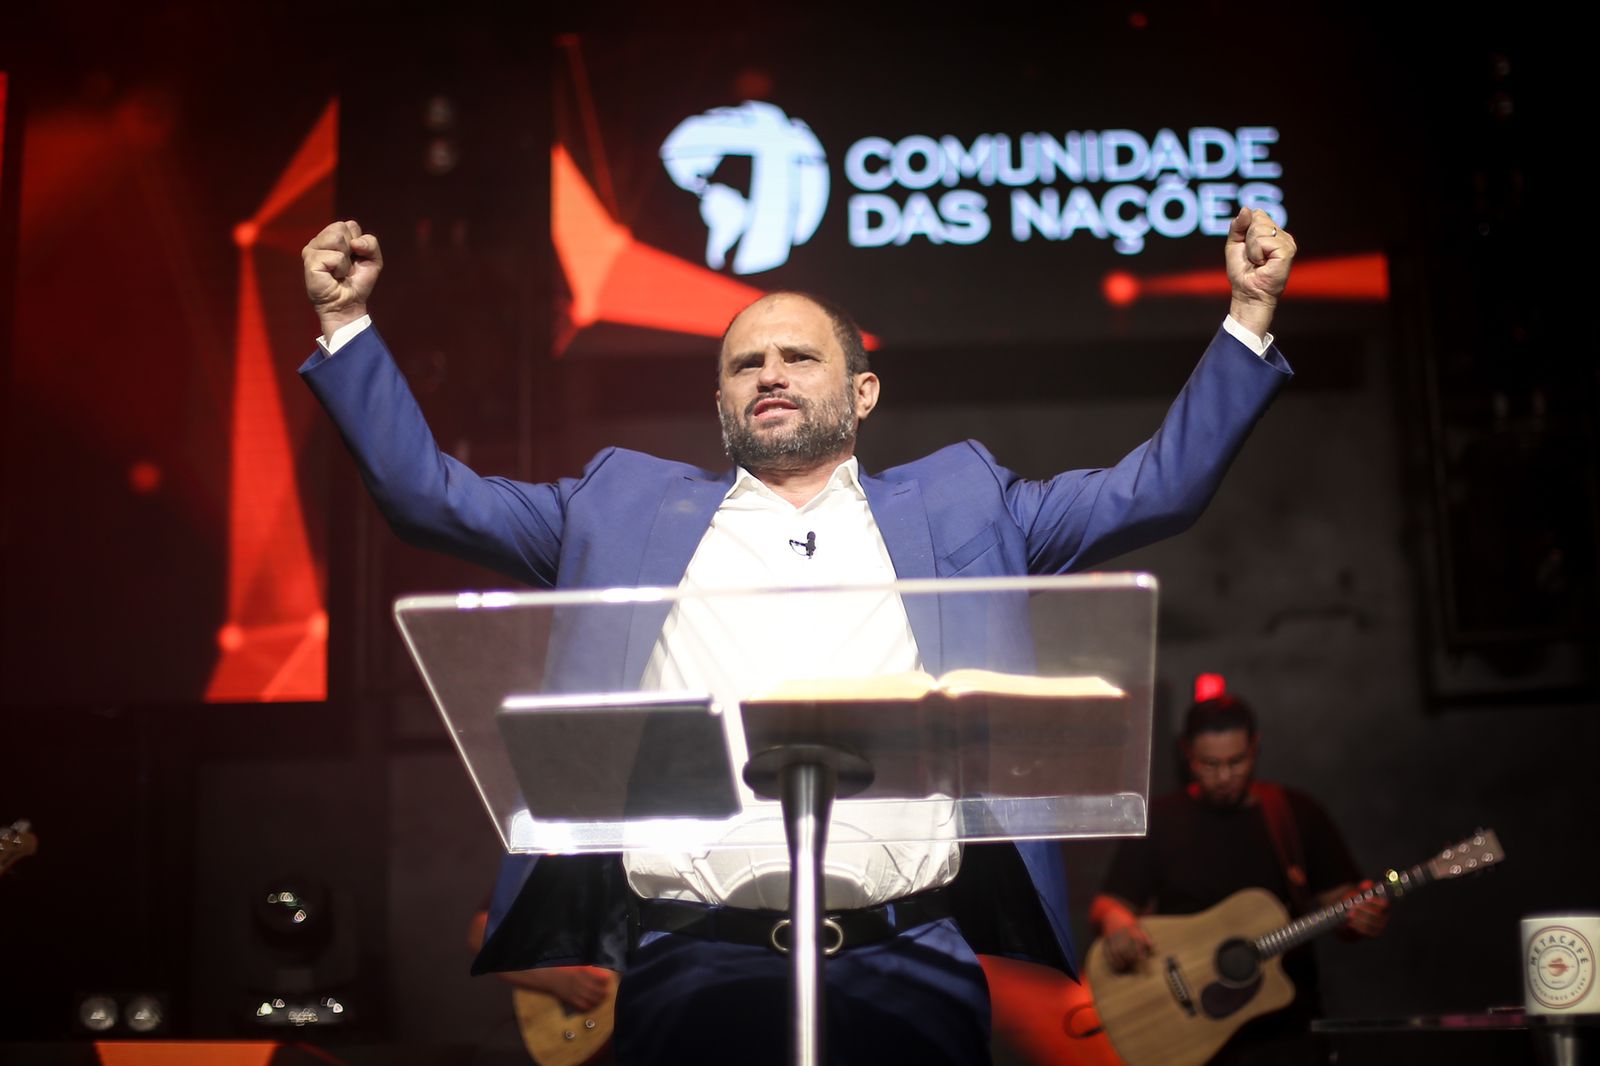 Cumprindo sua missão - JB Carvalho • Comunidade das Nações